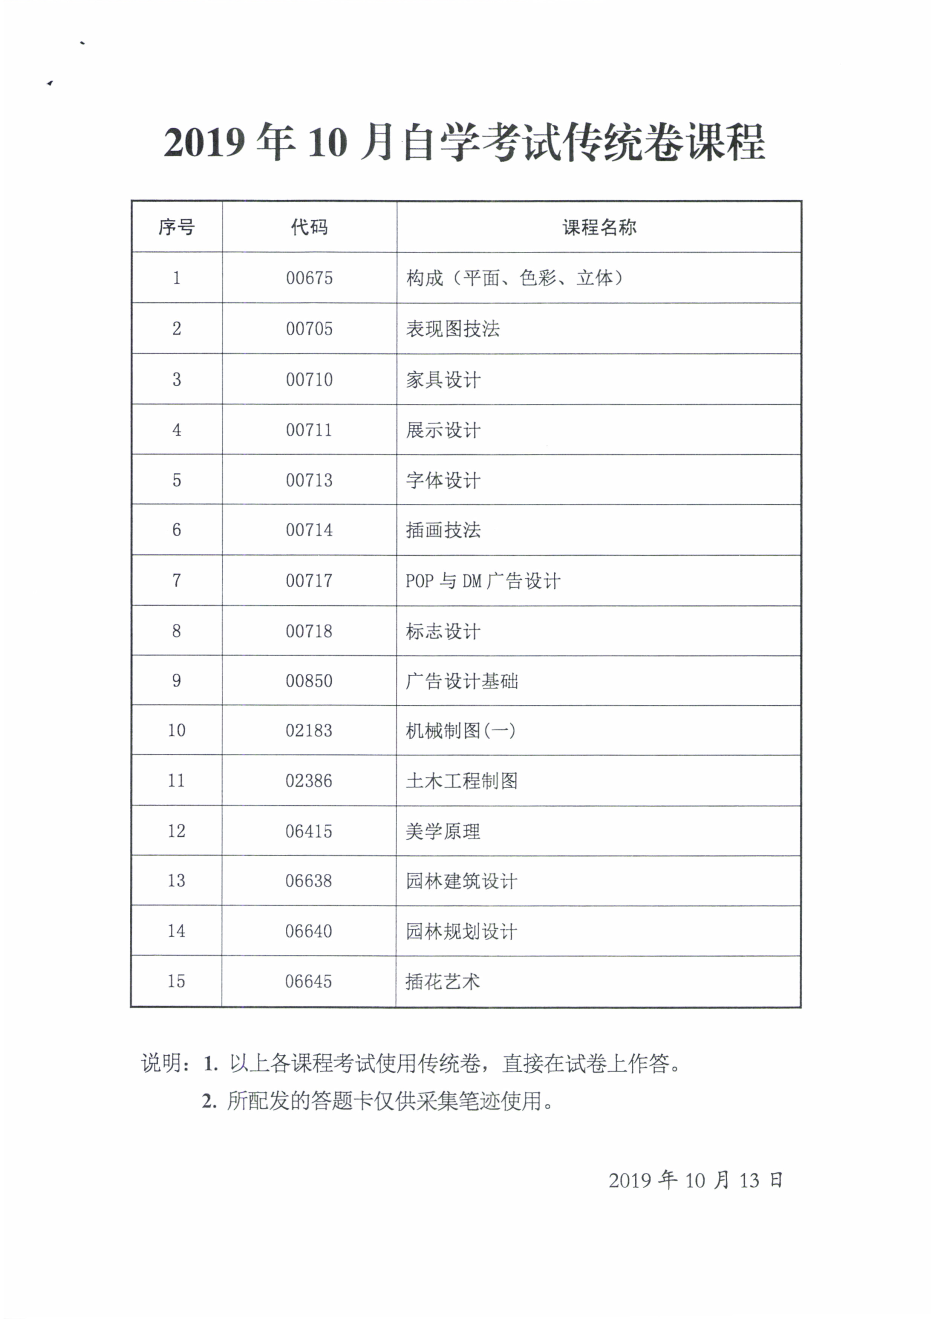 陕西省2019年10月自学考试传统卷课程、专用答题卡课程信息